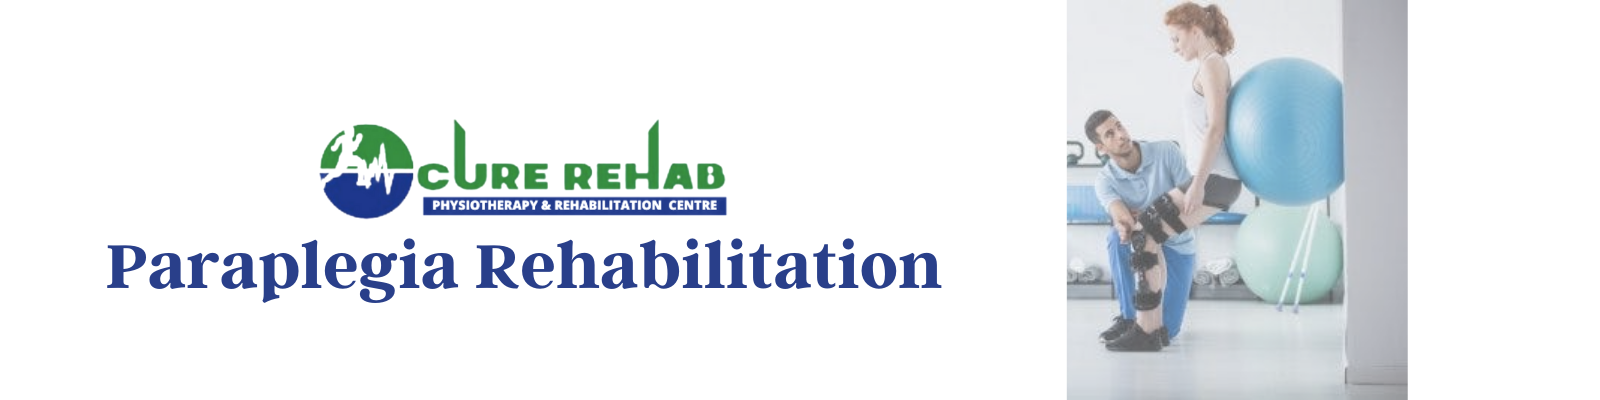 Paraplegia Rehabilitation